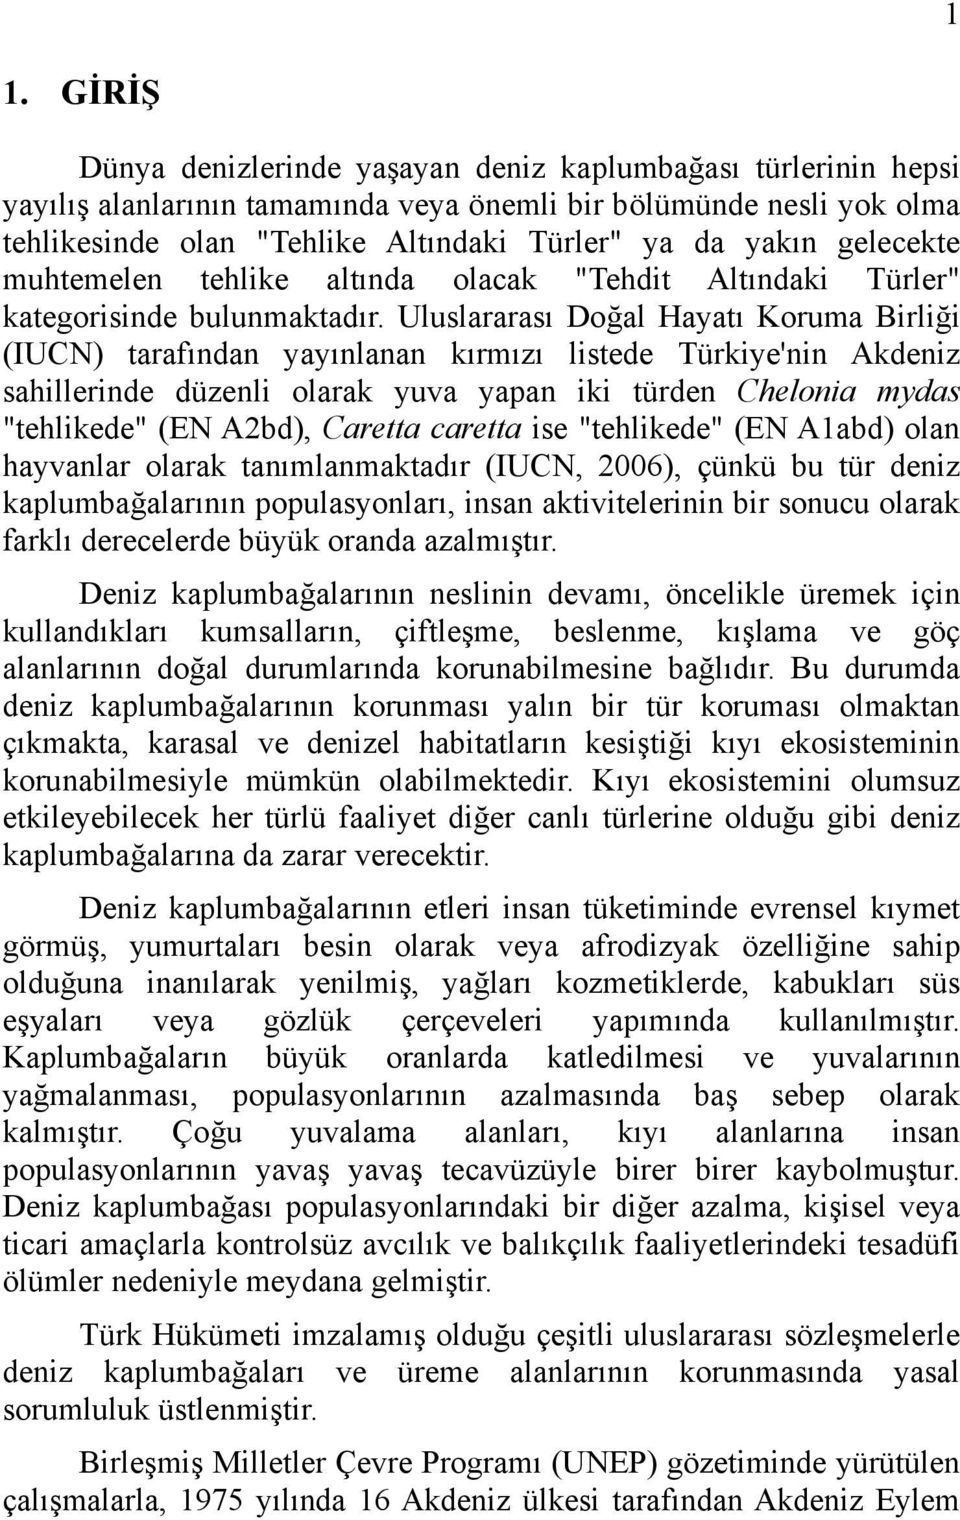 Uluslararası Doğal Hayatı Koruma Birliği (IUCN) tarafından yayınlanan kırmızı listede Türkiye'nin Akdeniz sahillerinde düzenli olarak yuva yapan iki türden Chelonia mydas "tehlikede" (EN A2bd),